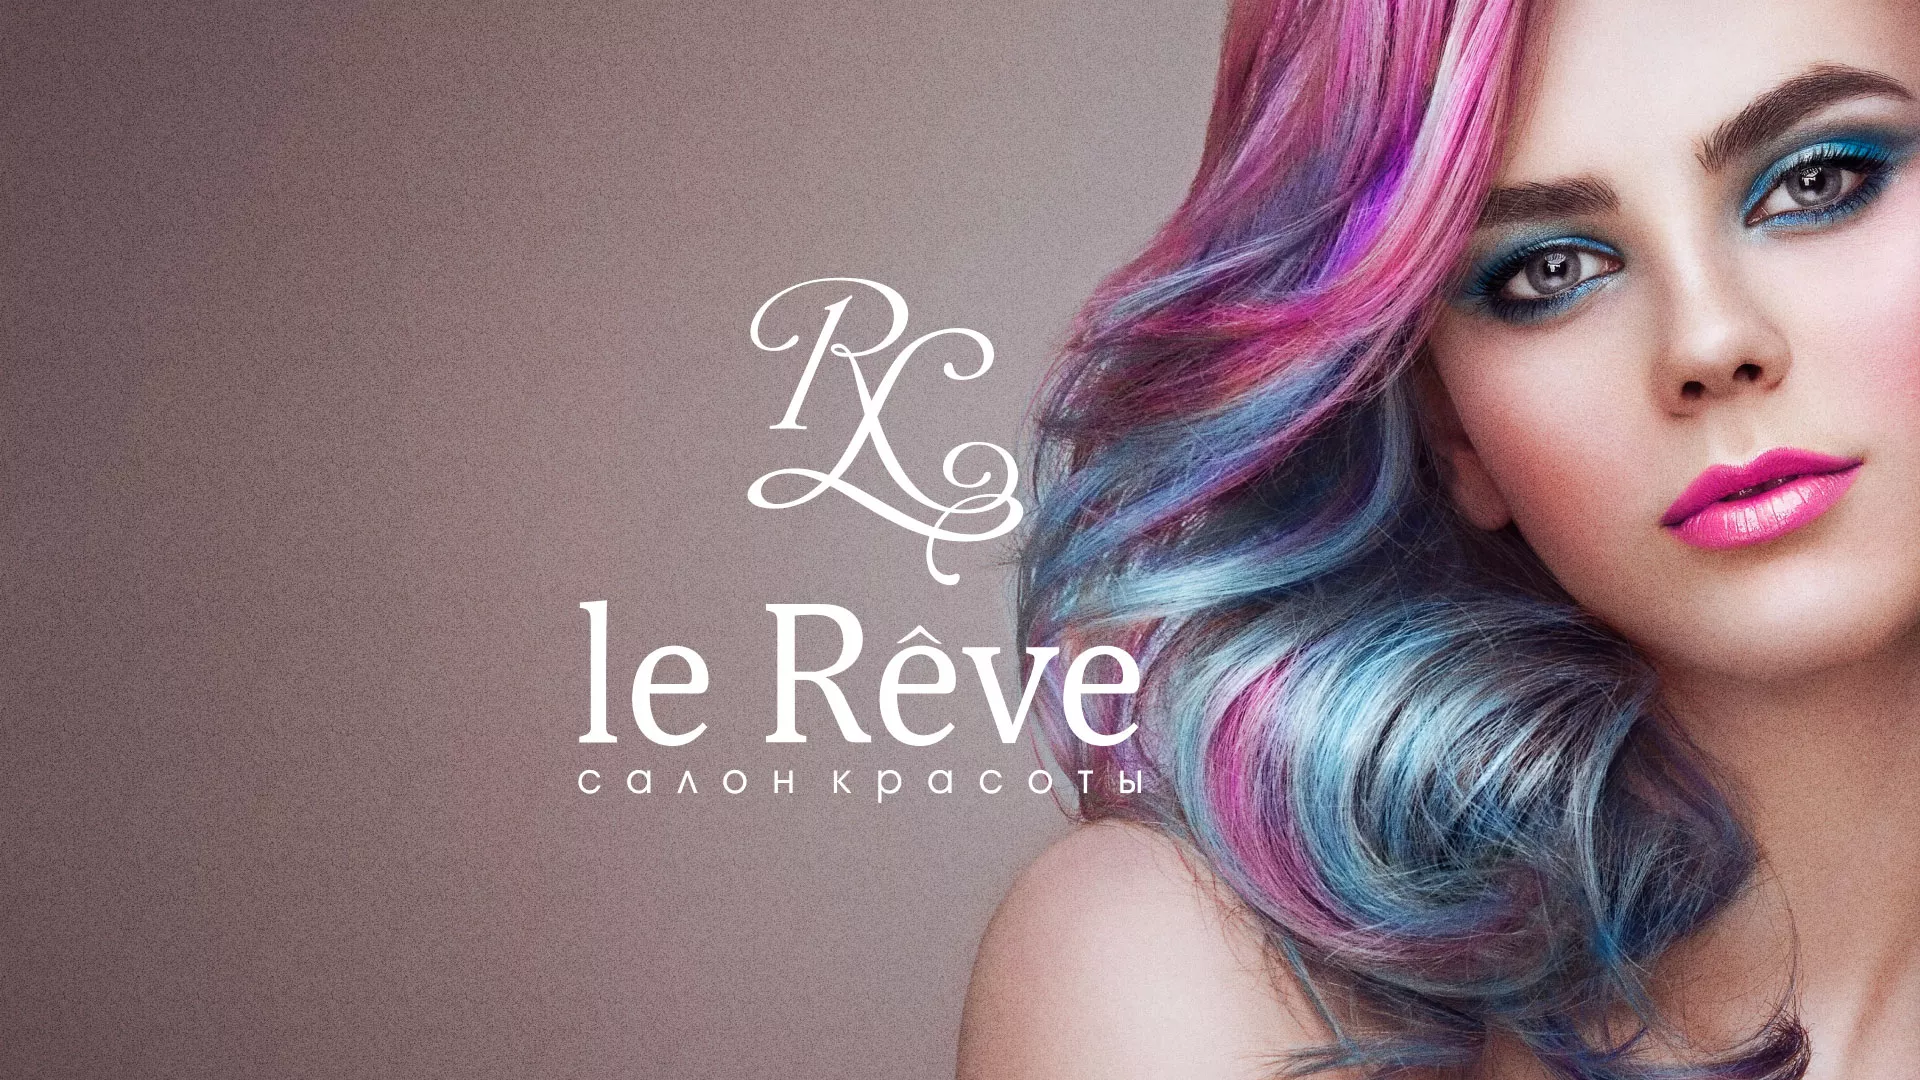 Создание сайта для салона красоты «Le Reve» в Богородицке